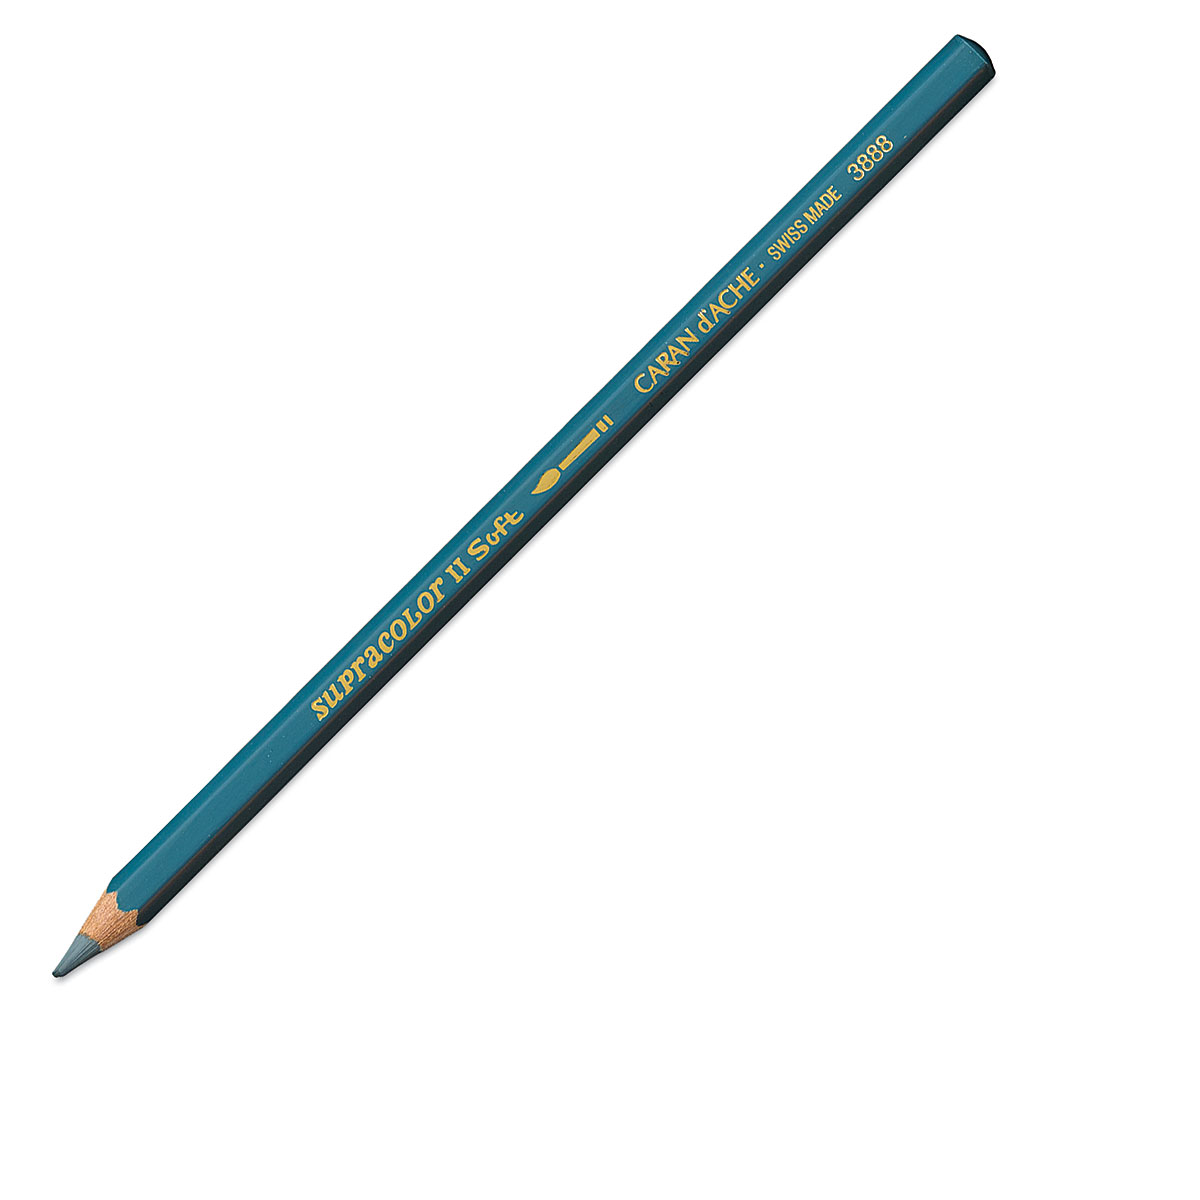 Caran d'Ache Supracolor Soft Aquarelle Pencil Set - Assorted